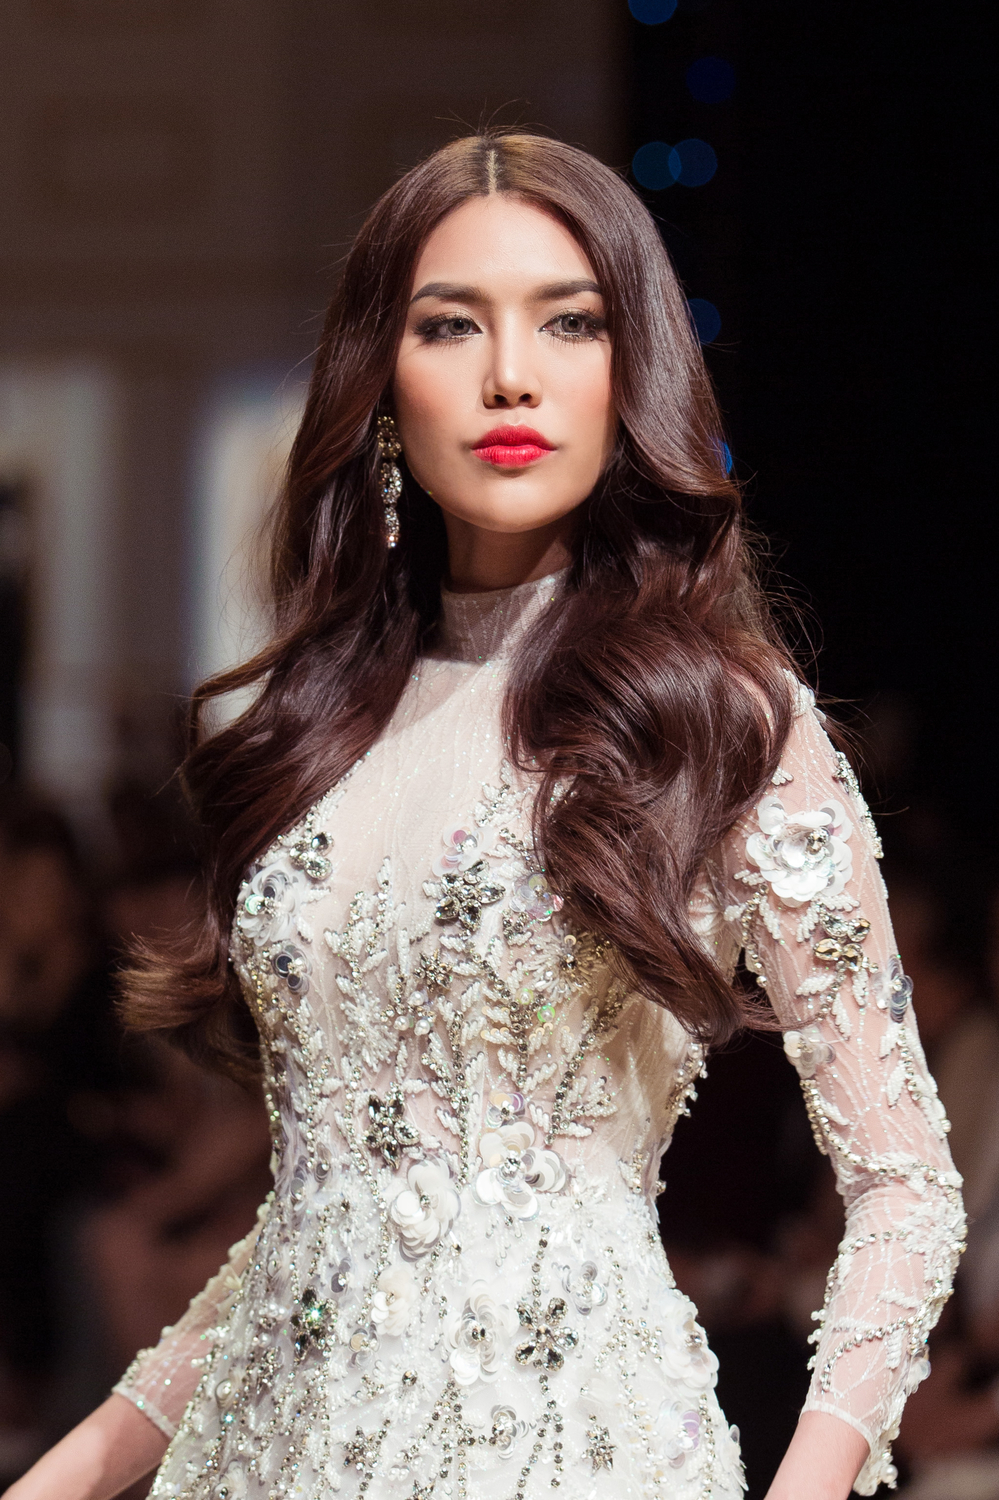 
Chuyên trang sắc đẹp Globalbeauties từng công bố top 50 mỹ nhân đẹp nhất thế giới năm 2015. Danh sách này được đưa ra sau khi đánh giá các người đẹp nằm trong top 20 của các cuộc thi Hoa hậu uy tín. Lan Khuê là đại diện duy nhất của Việt Nam đã lọt vào danh sách này.